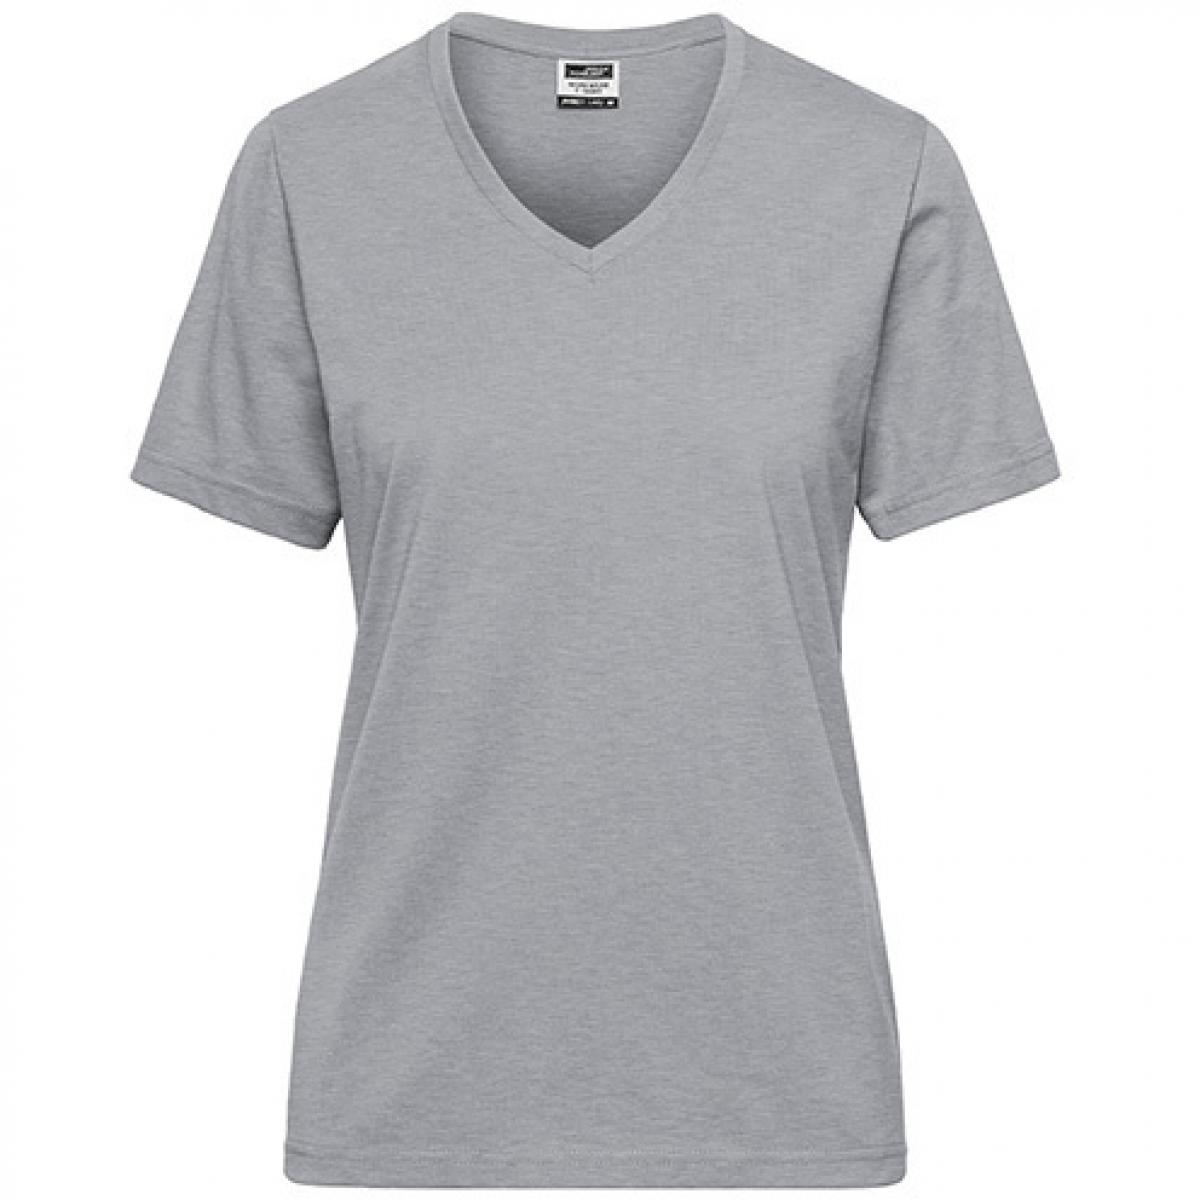 Hersteller: James+Nicholson Herstellernummer: JN1807 Artikelbezeichnung: Ladies‘ BIO Workwear T-Shirt / Damen T-Shirt - Waschbar 60C Farbe: Grey Heather